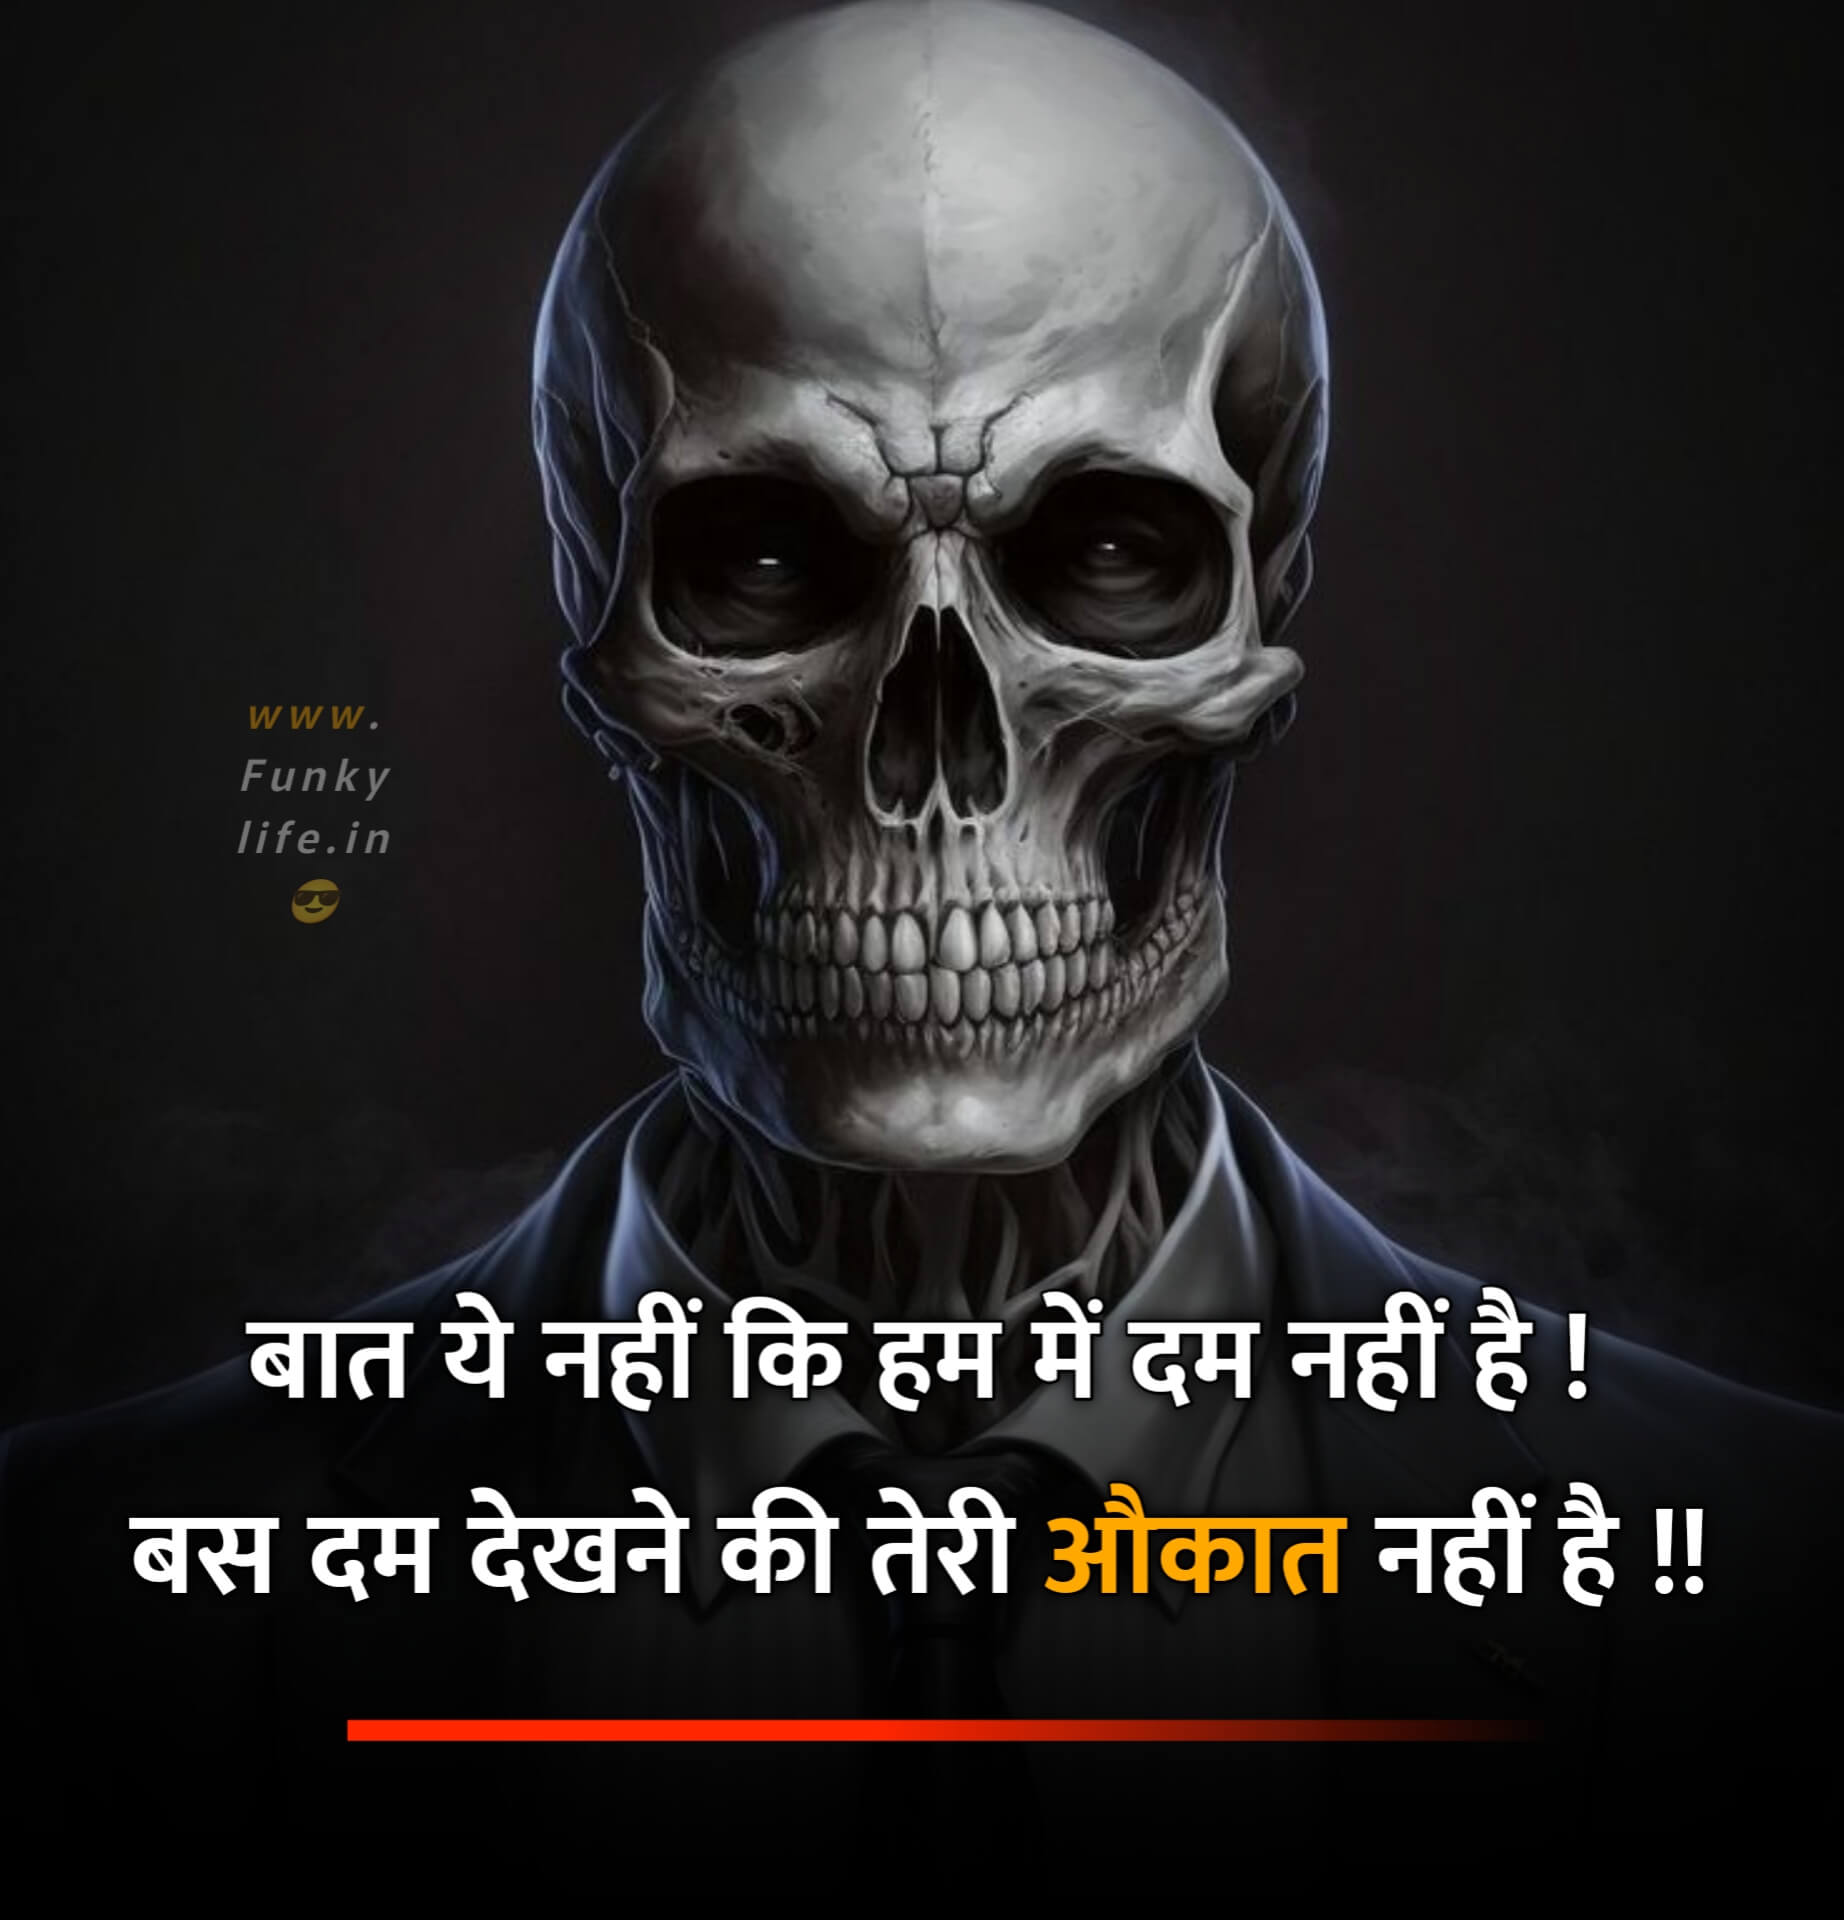 Killer Attitude Quote in Hindi